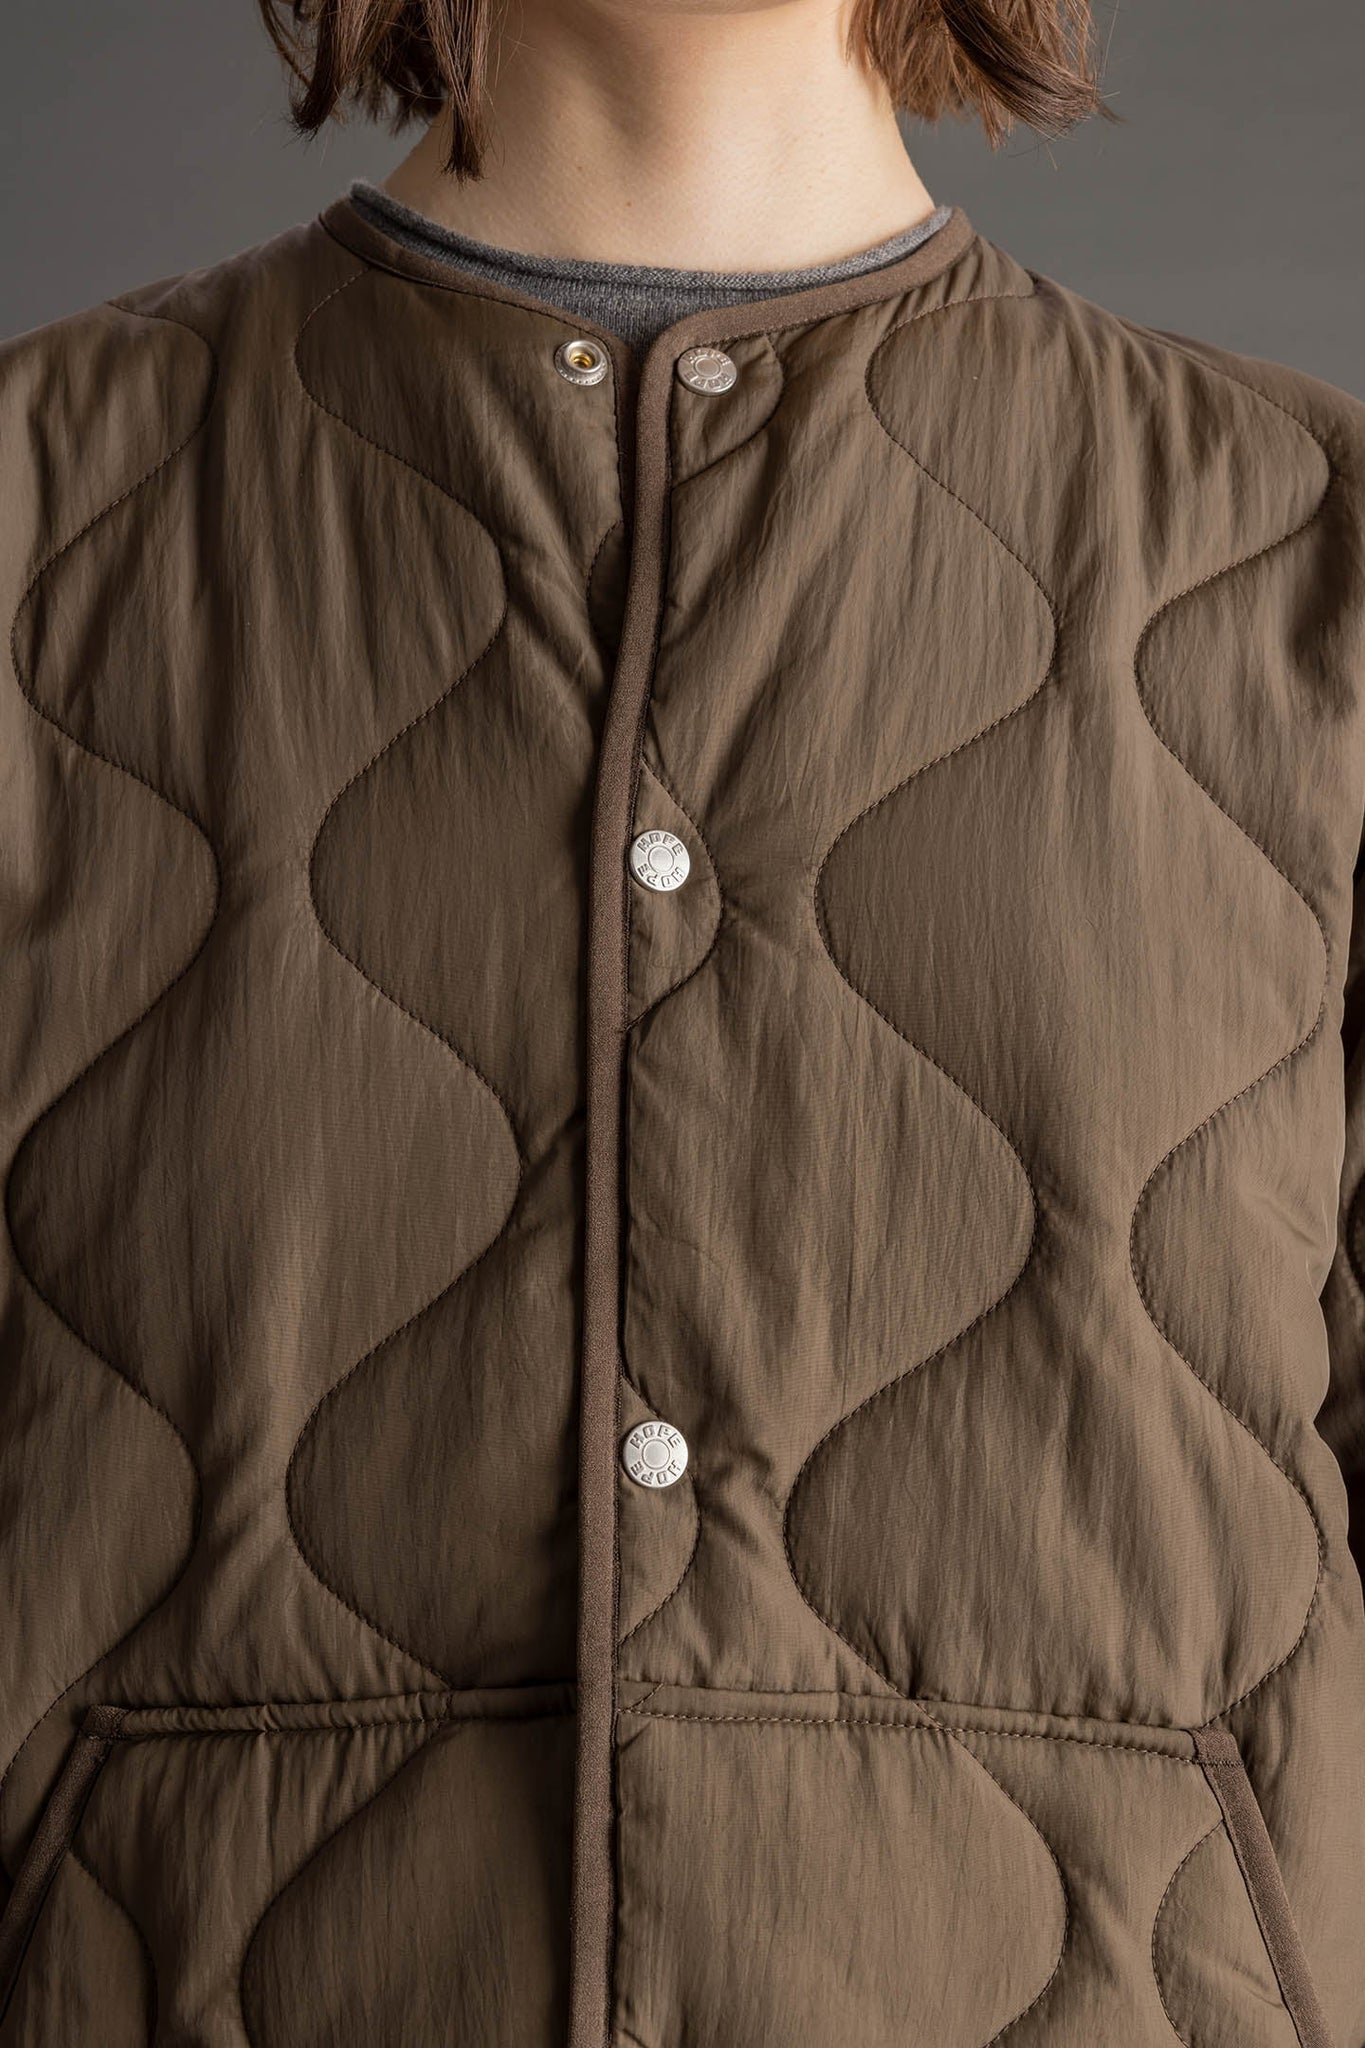 Highland jacket by Hope - olive quilt